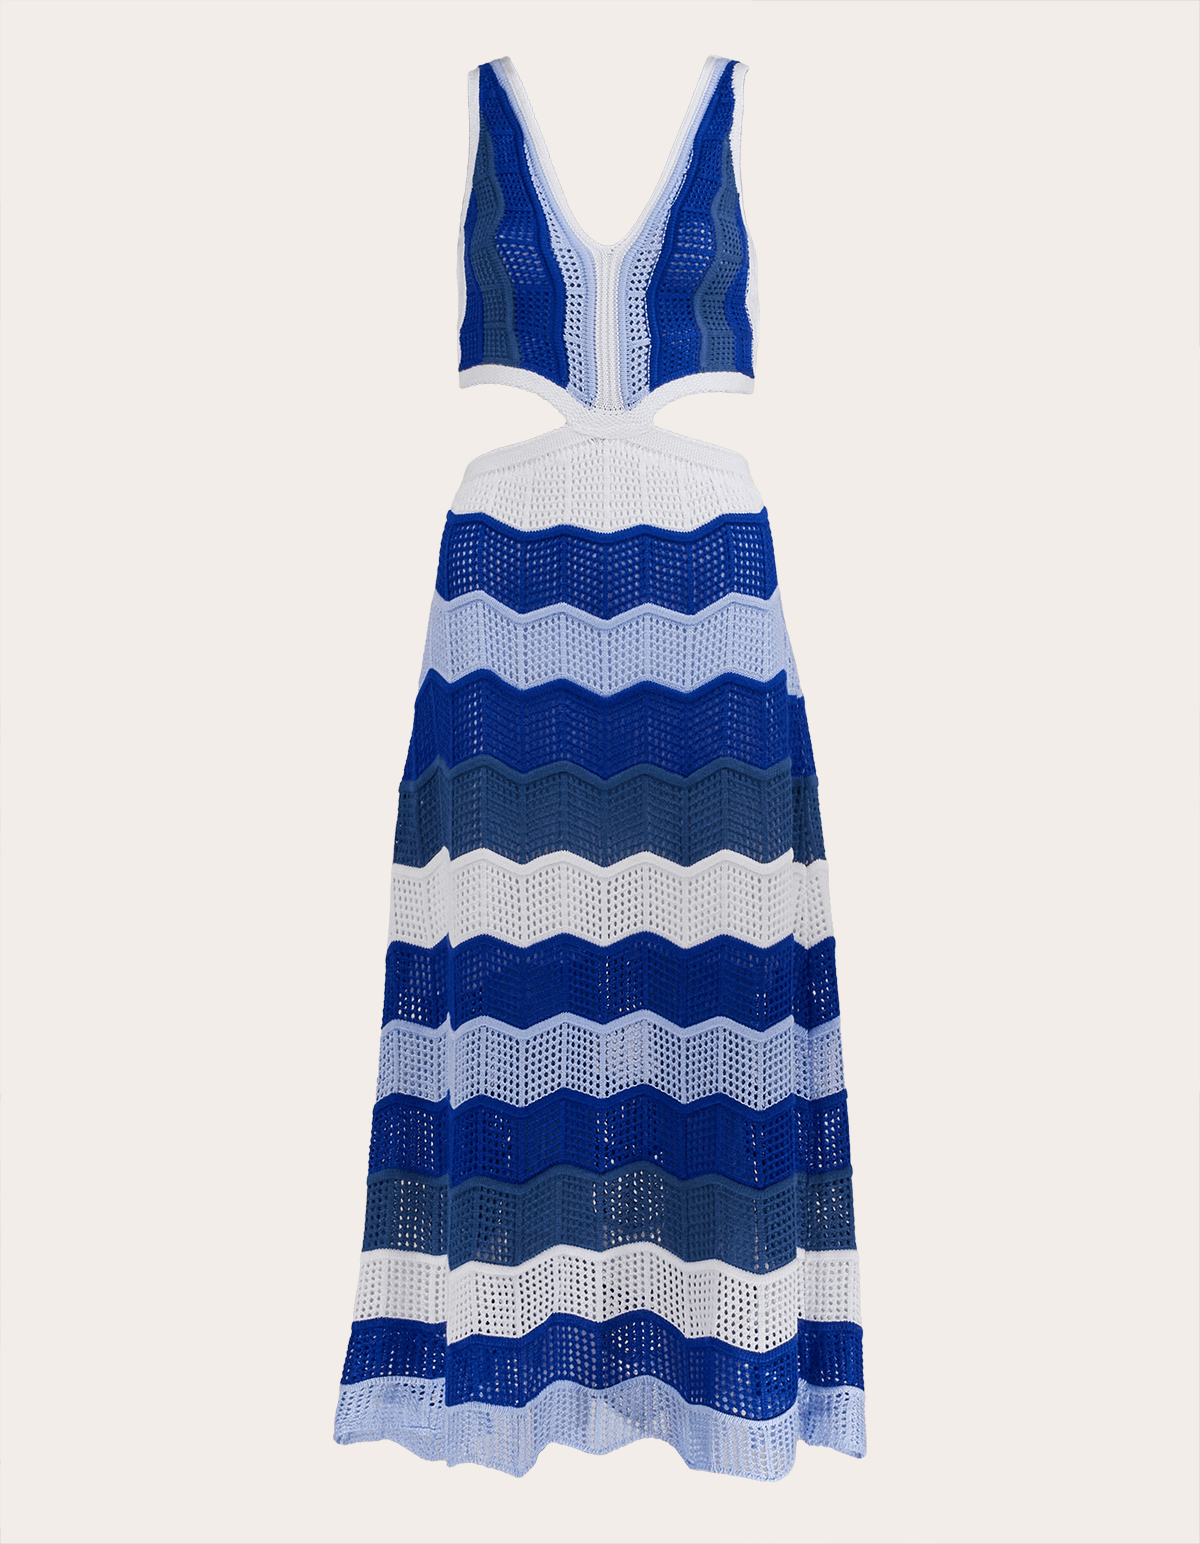 Vestido longo modal tricot detalhado crochê - R$ 79.00, cor Azul claro ( sereia, de tricô, decotado, de poliester) #12334, compre agora